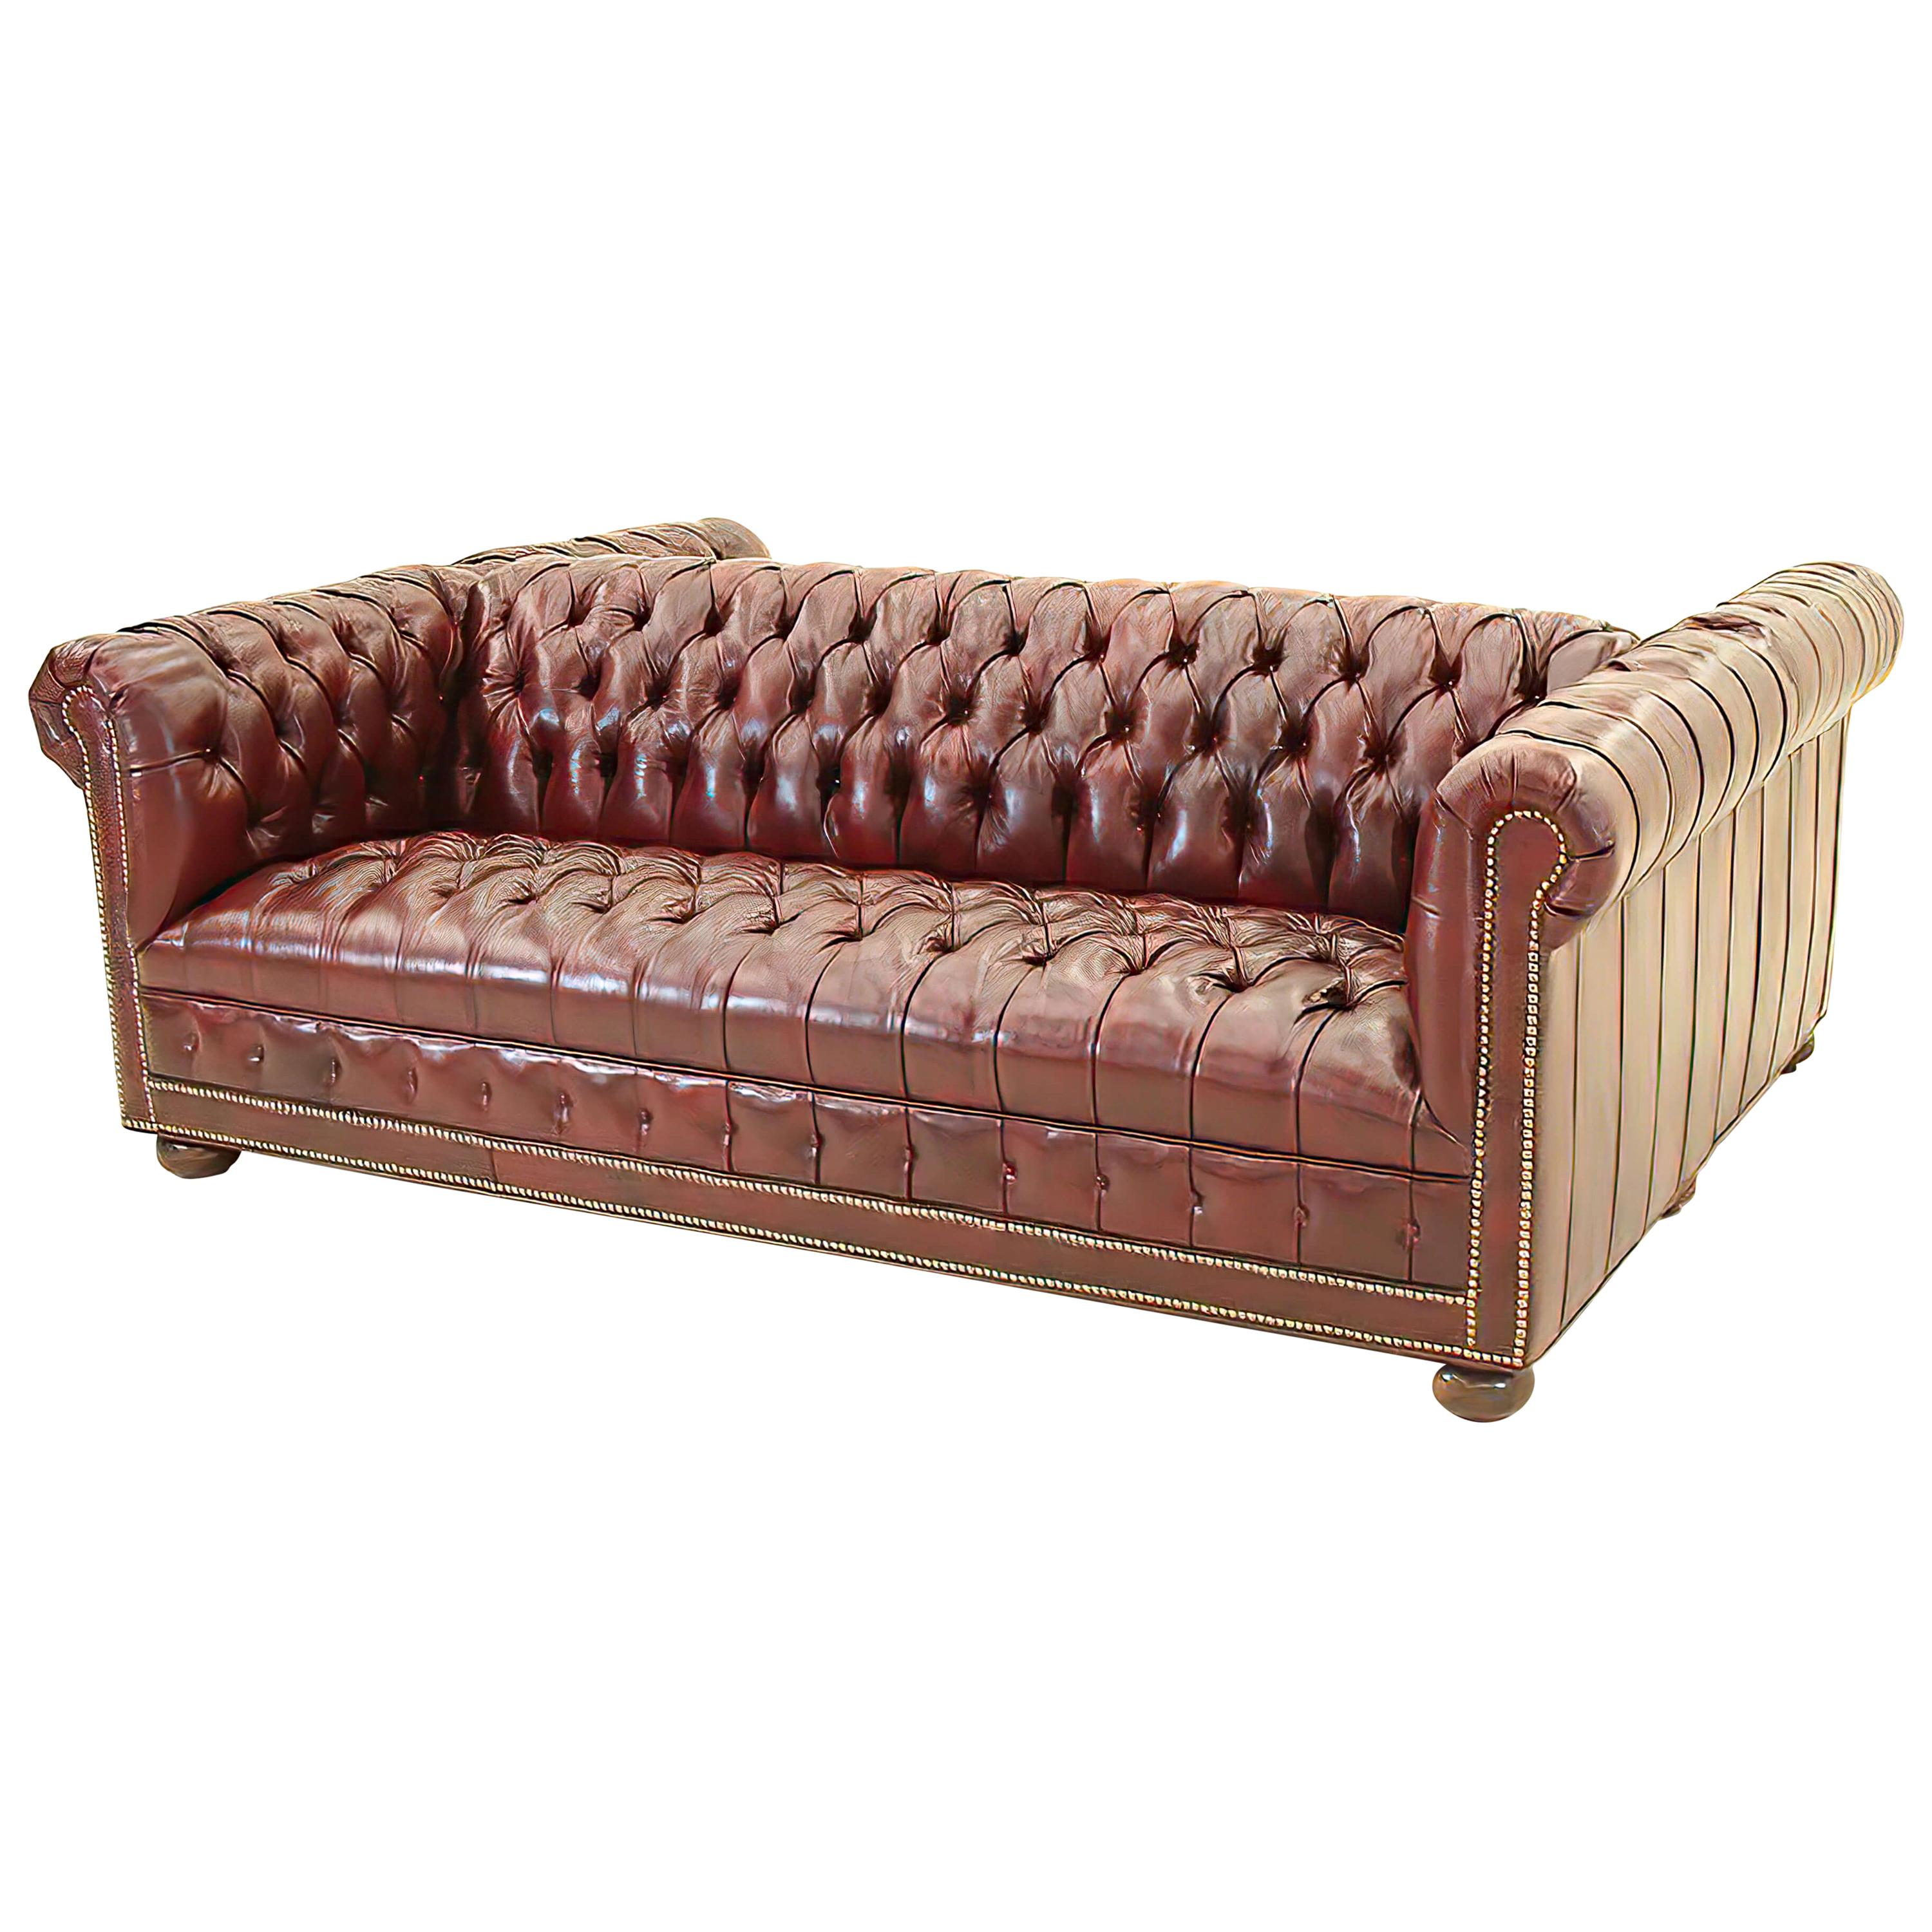 Custom Double Sided Chesterfield Sofa